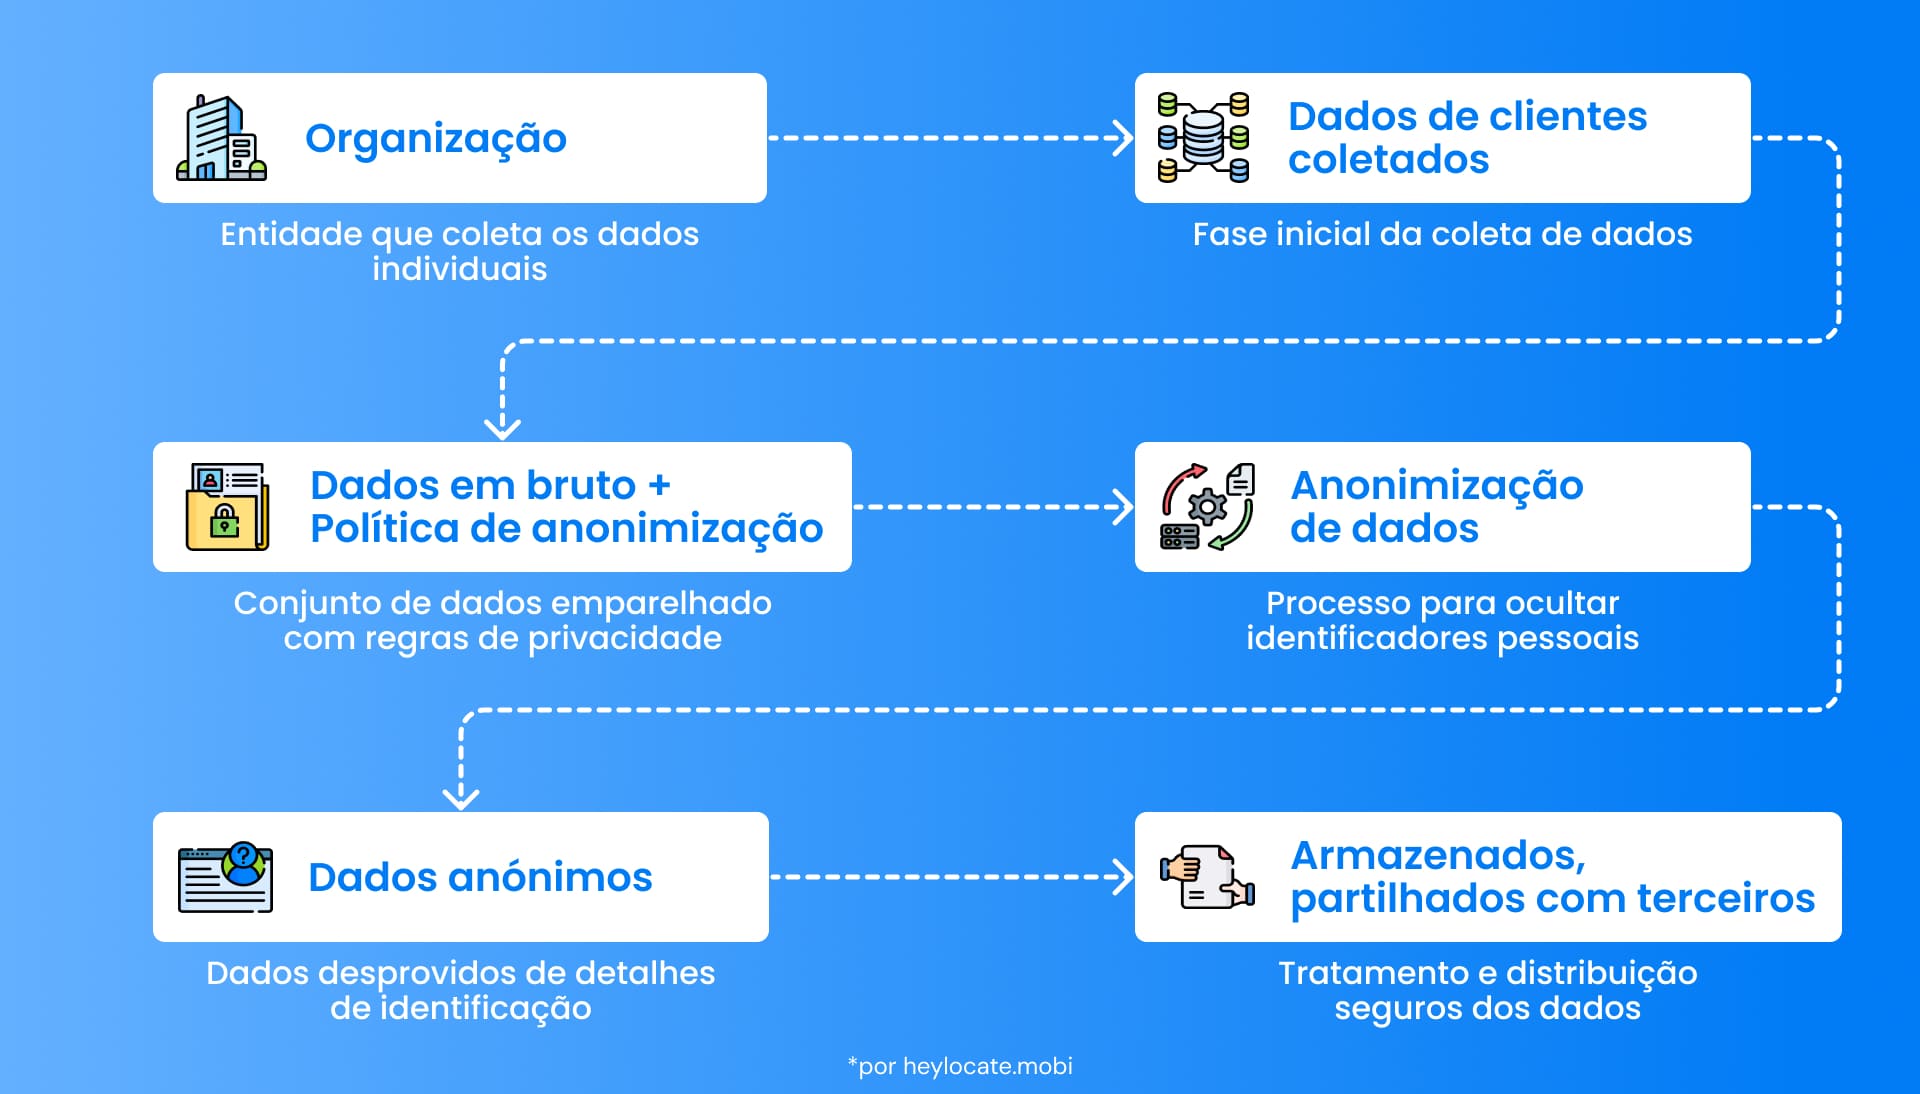 Fluxograma que descreve as etapas da anonimização de dados.  Descrevendo as etapas desde a coleta até a transmissão